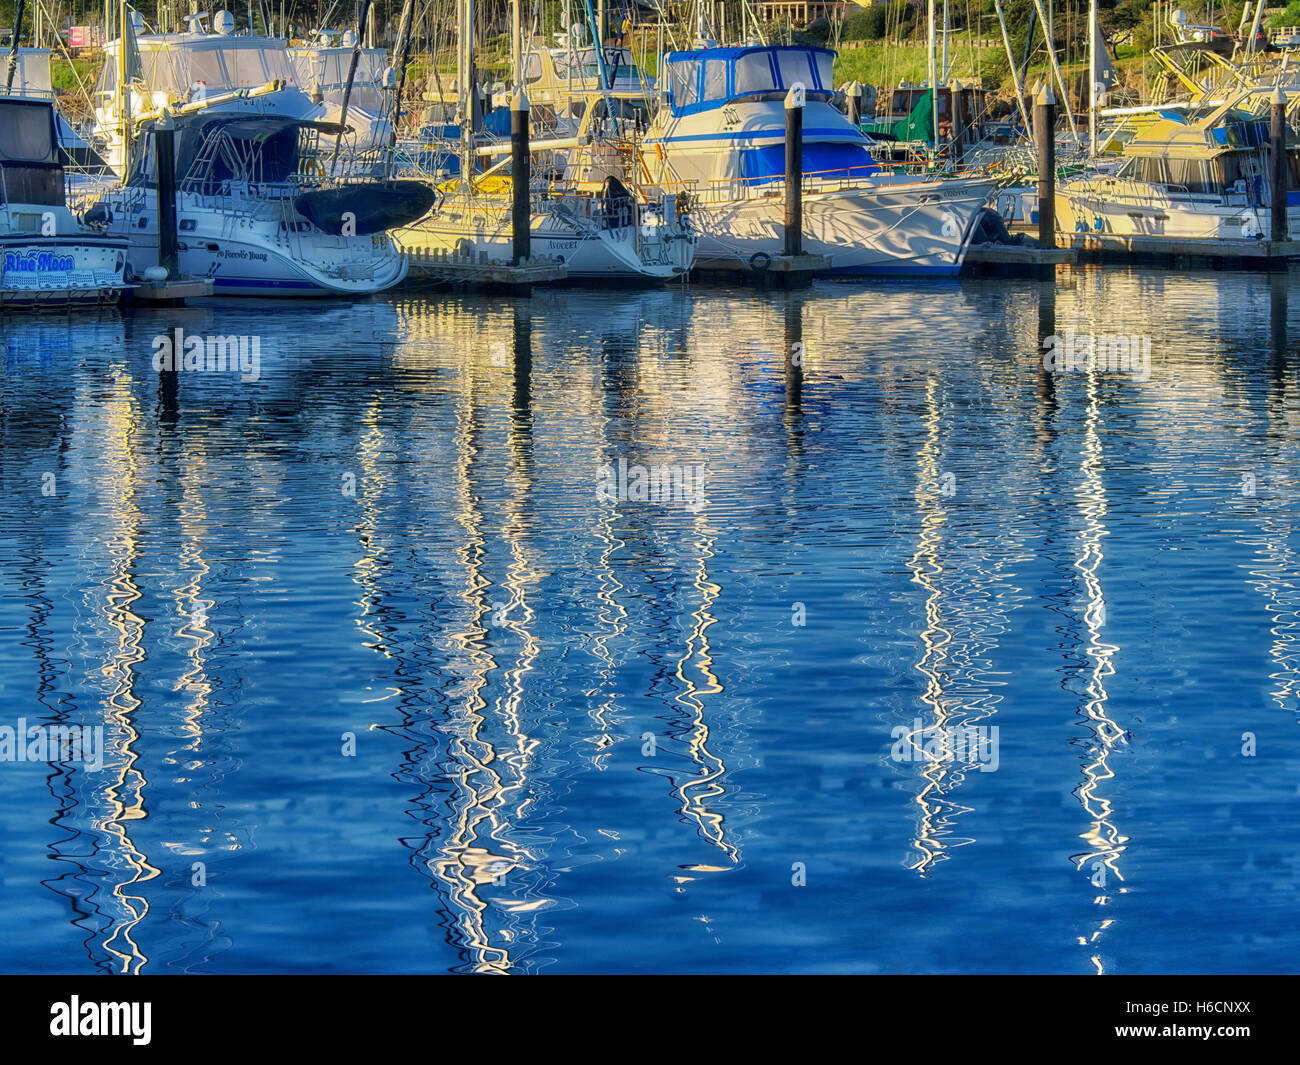 Reflected sailing masts and boats at Monterey Harbor and Marina, California Stock Photo